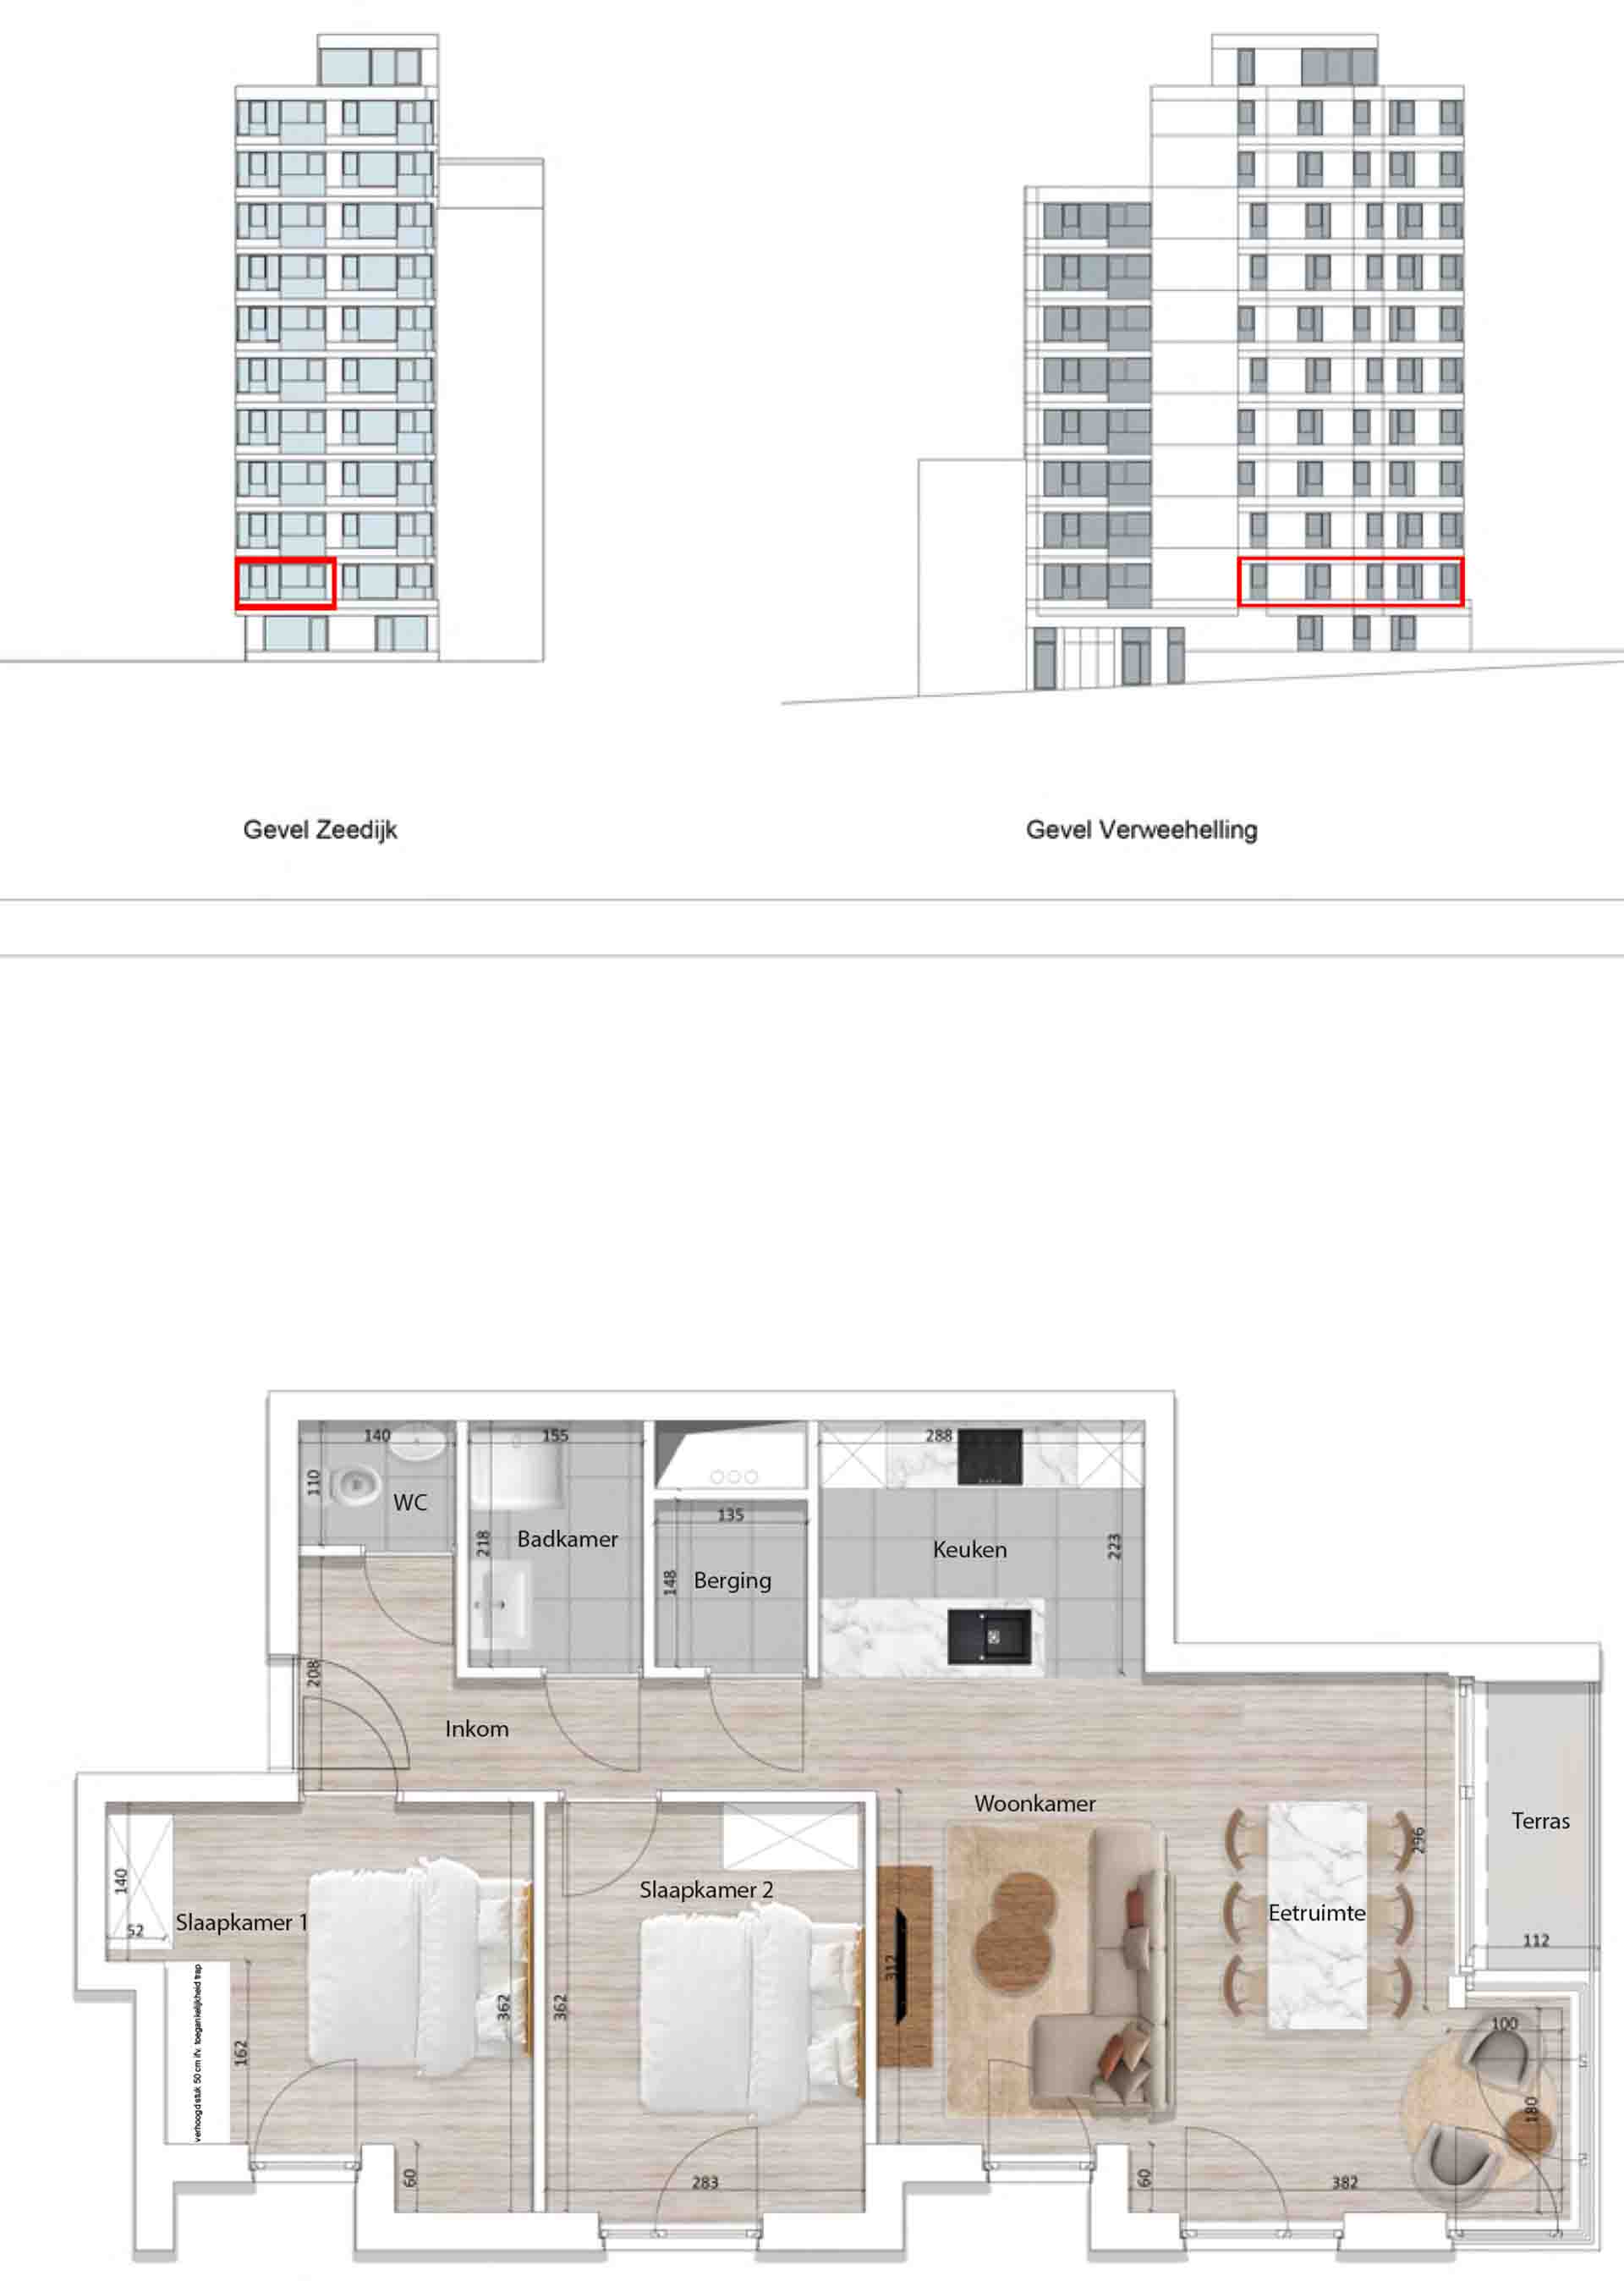 Residentie <br/> Pier - image appartement-te-koop-blankenberge-residentie-pier-plan-0102-1 on https://hoprom.be